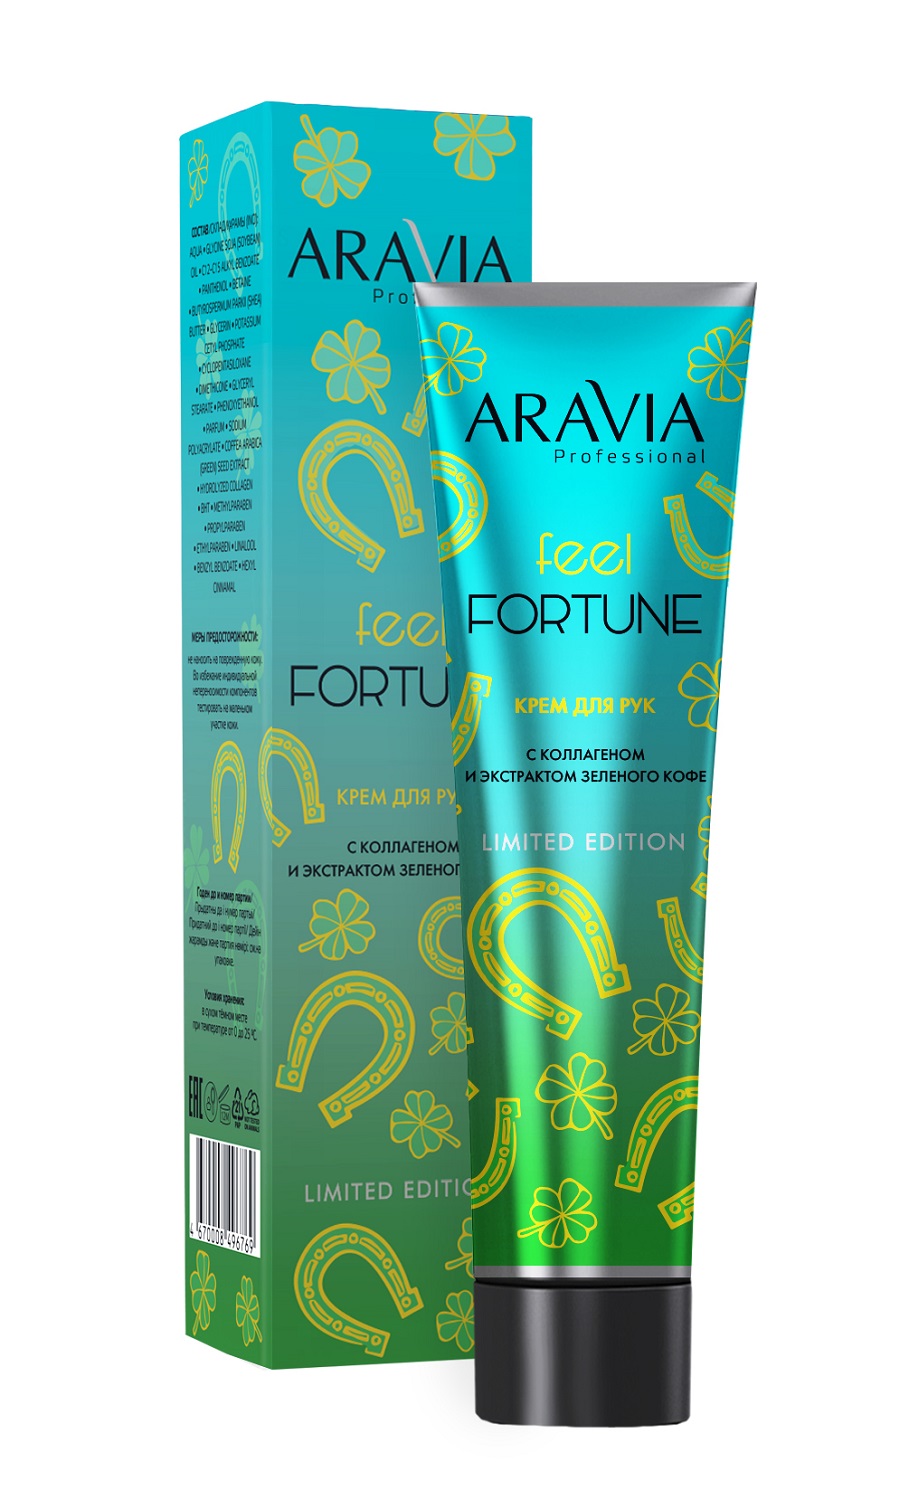 цена Aravia Professional Крем для рук Feel Fortune с коллагеном и экстрактом зеленого кофе, 100 мл (Aravia Professional, SPA маникюр)